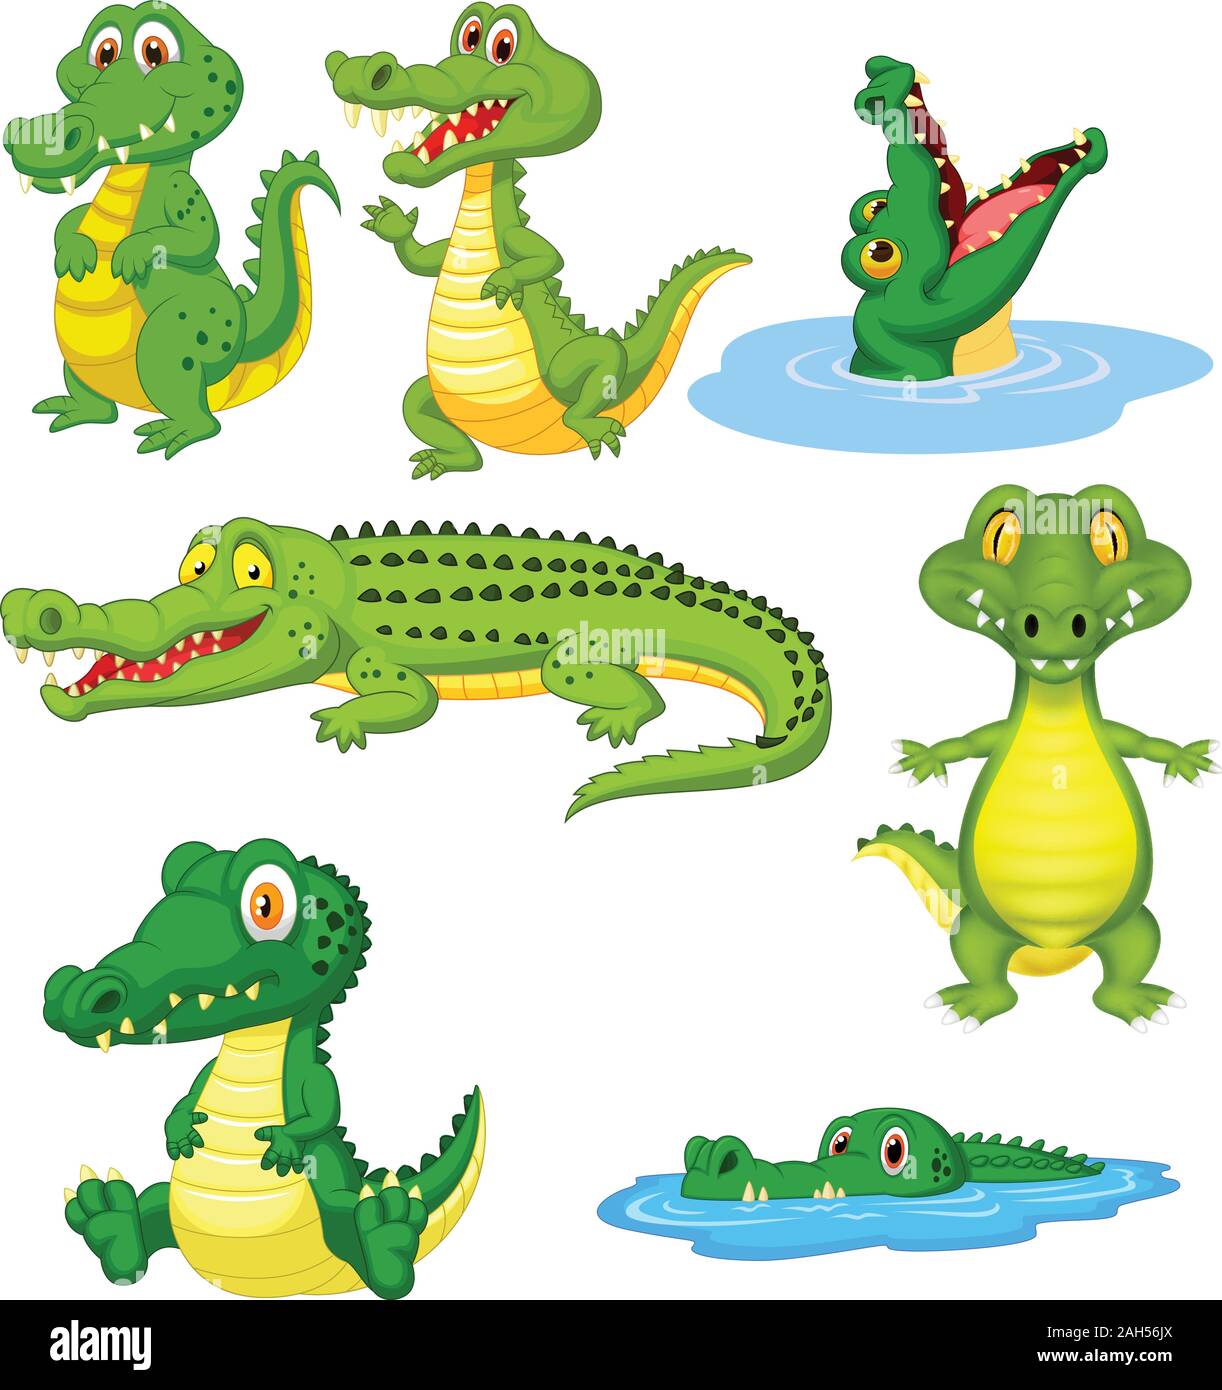 Cartoon green crocodile collection set Stock Vector